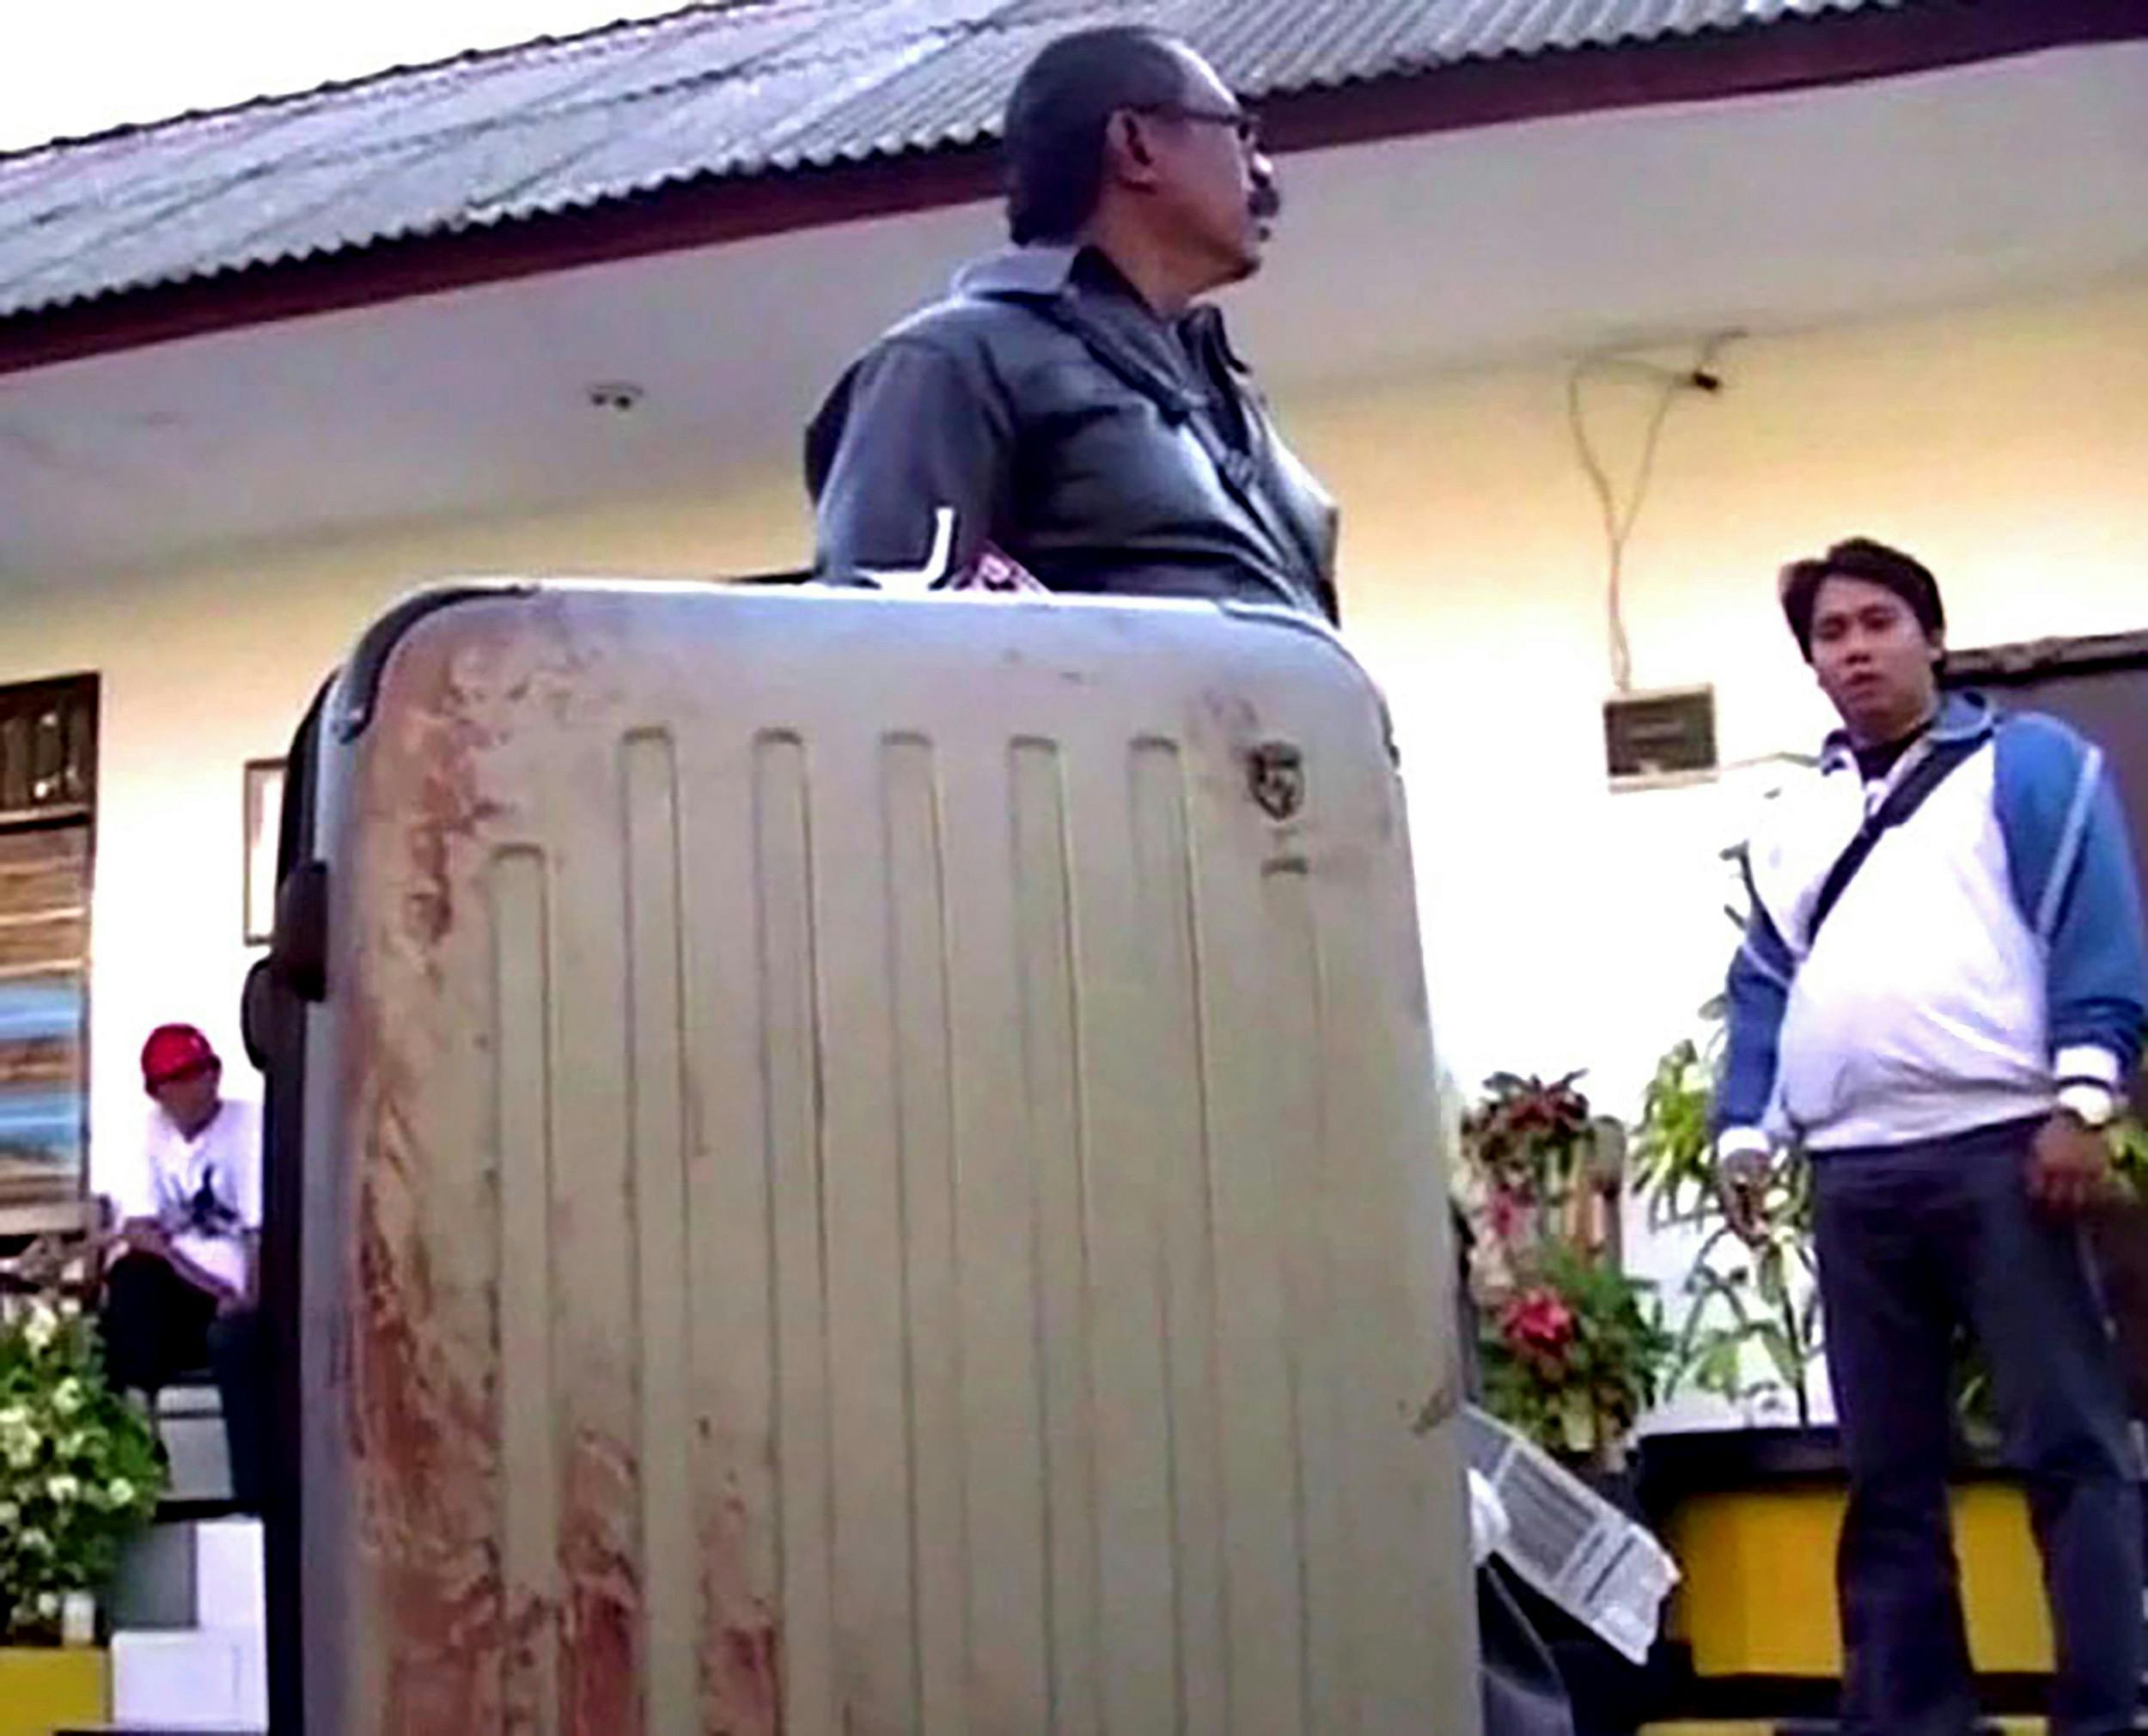 Taxachaufføren gik straks til politiet med den glemte kuffert, fordi der løb blod ud af den.